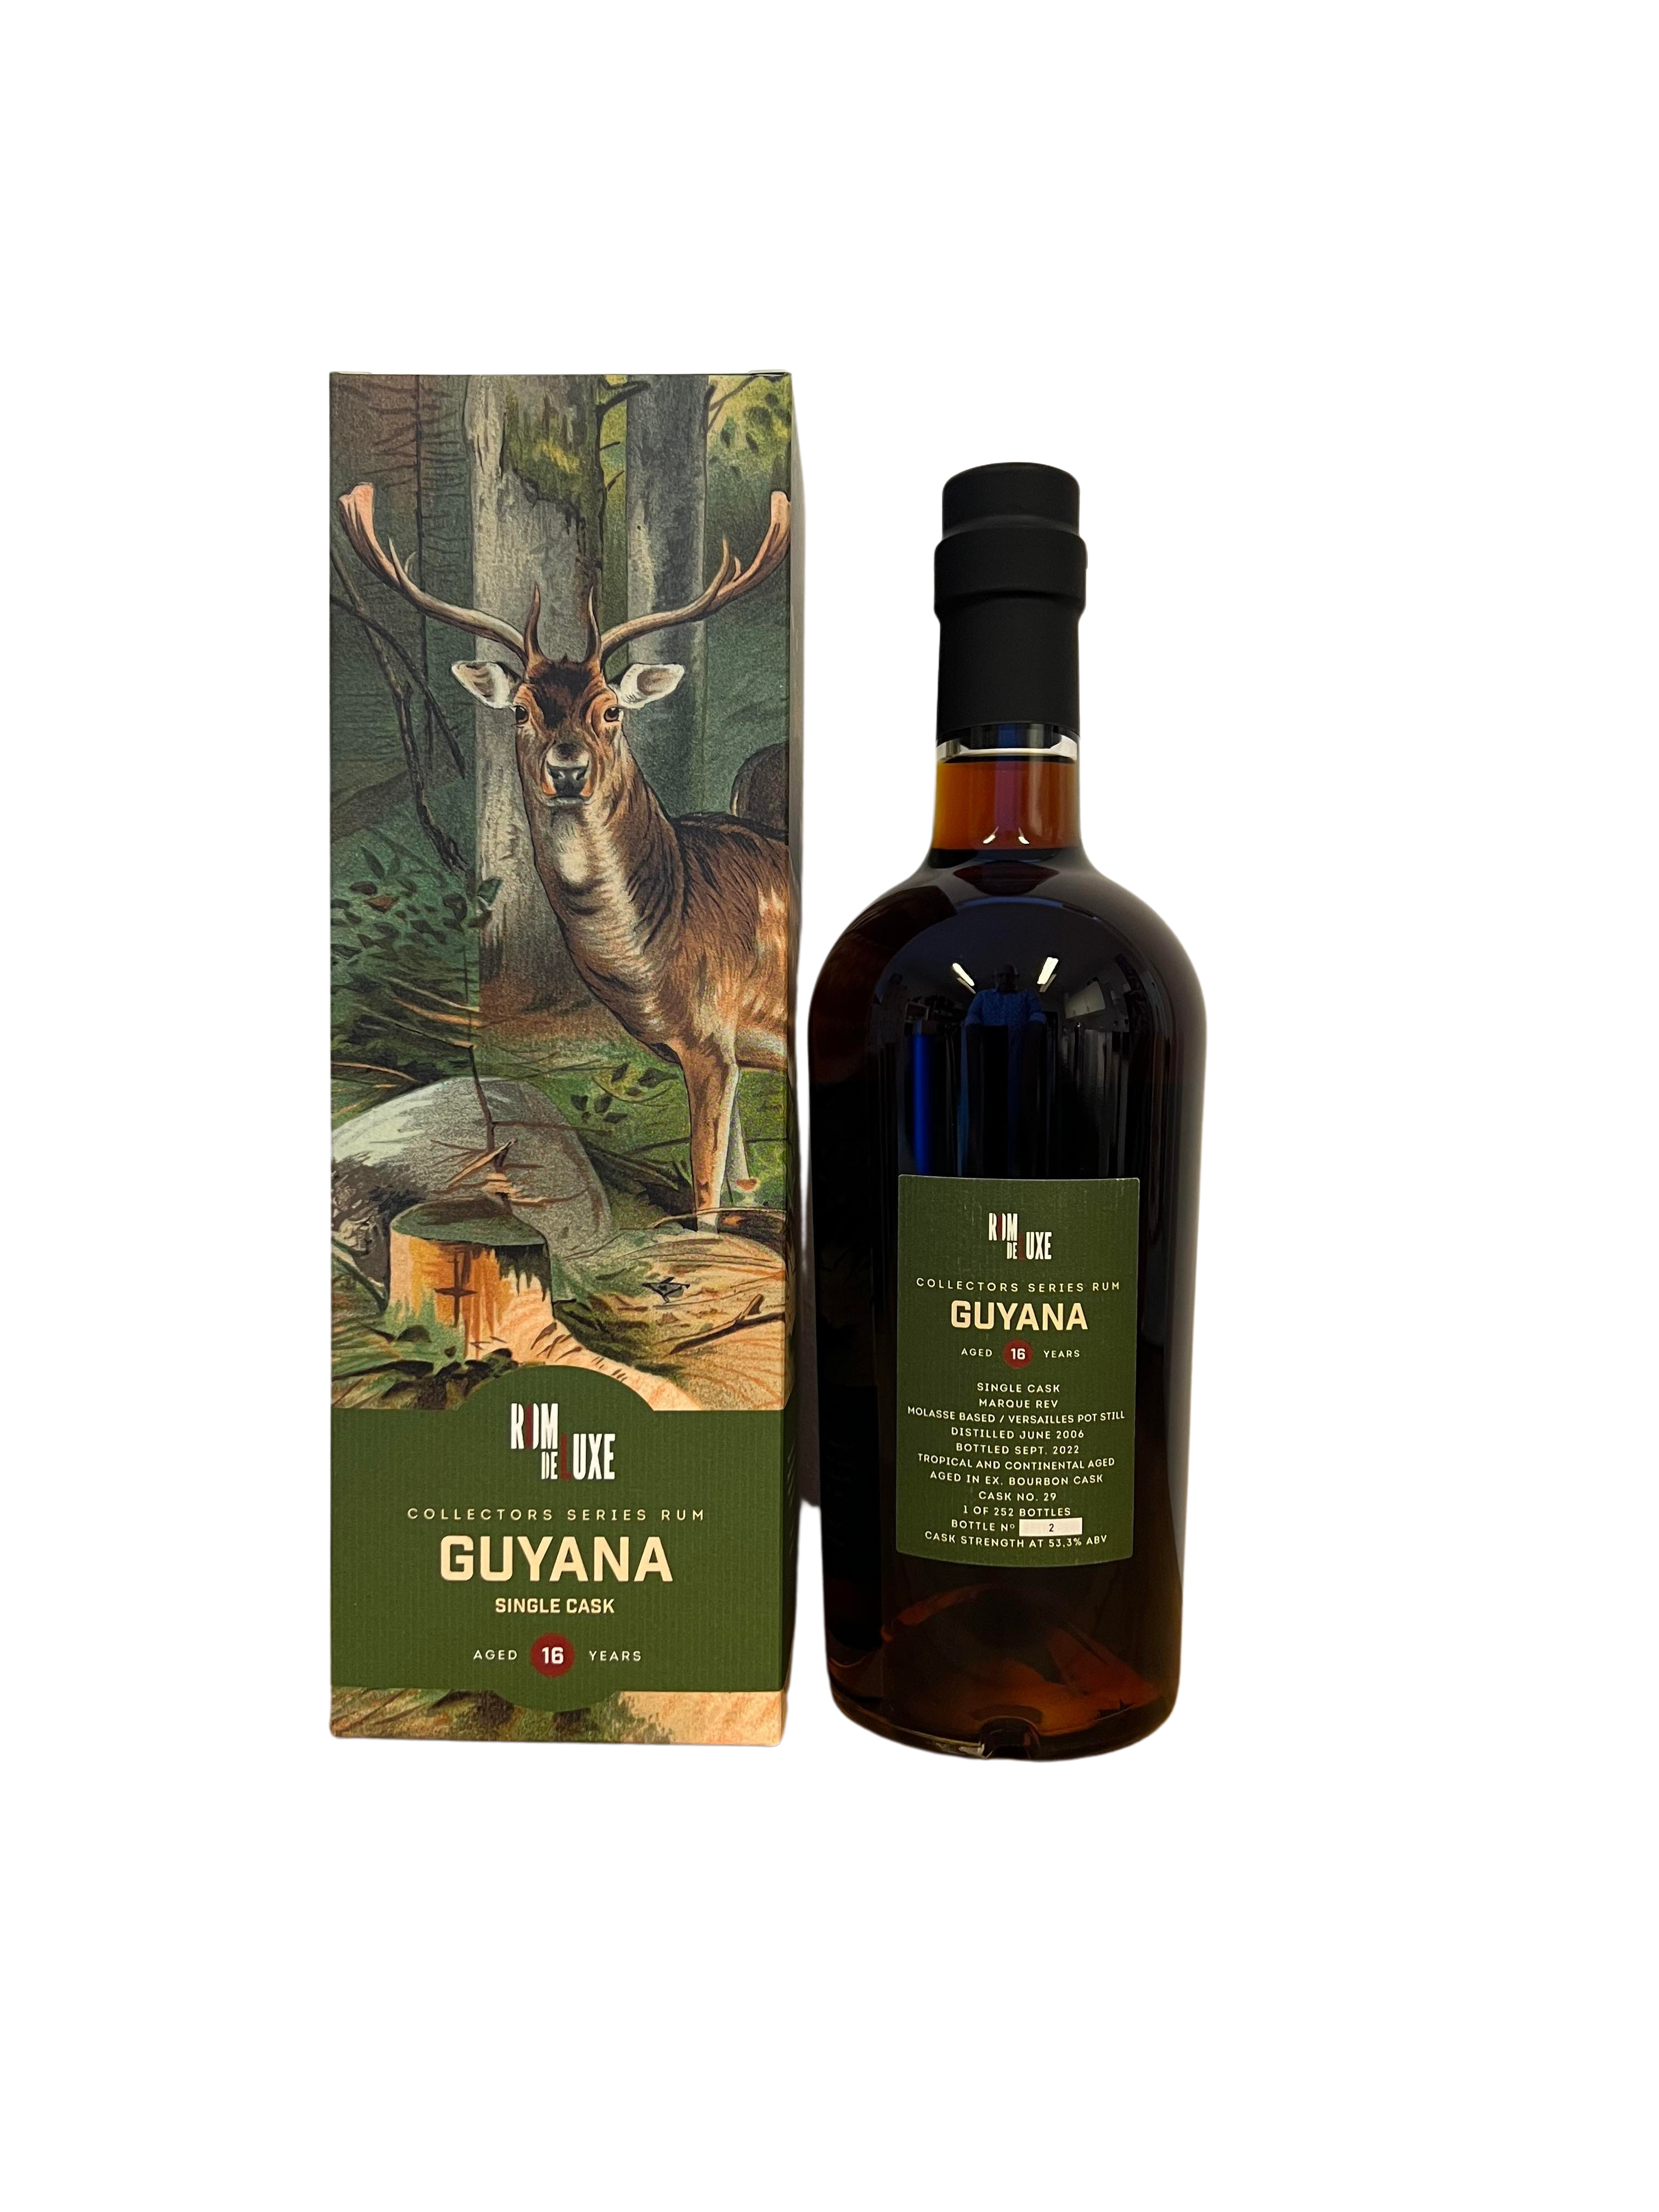 Collectors Series Rum n.12 Guyana 16yo